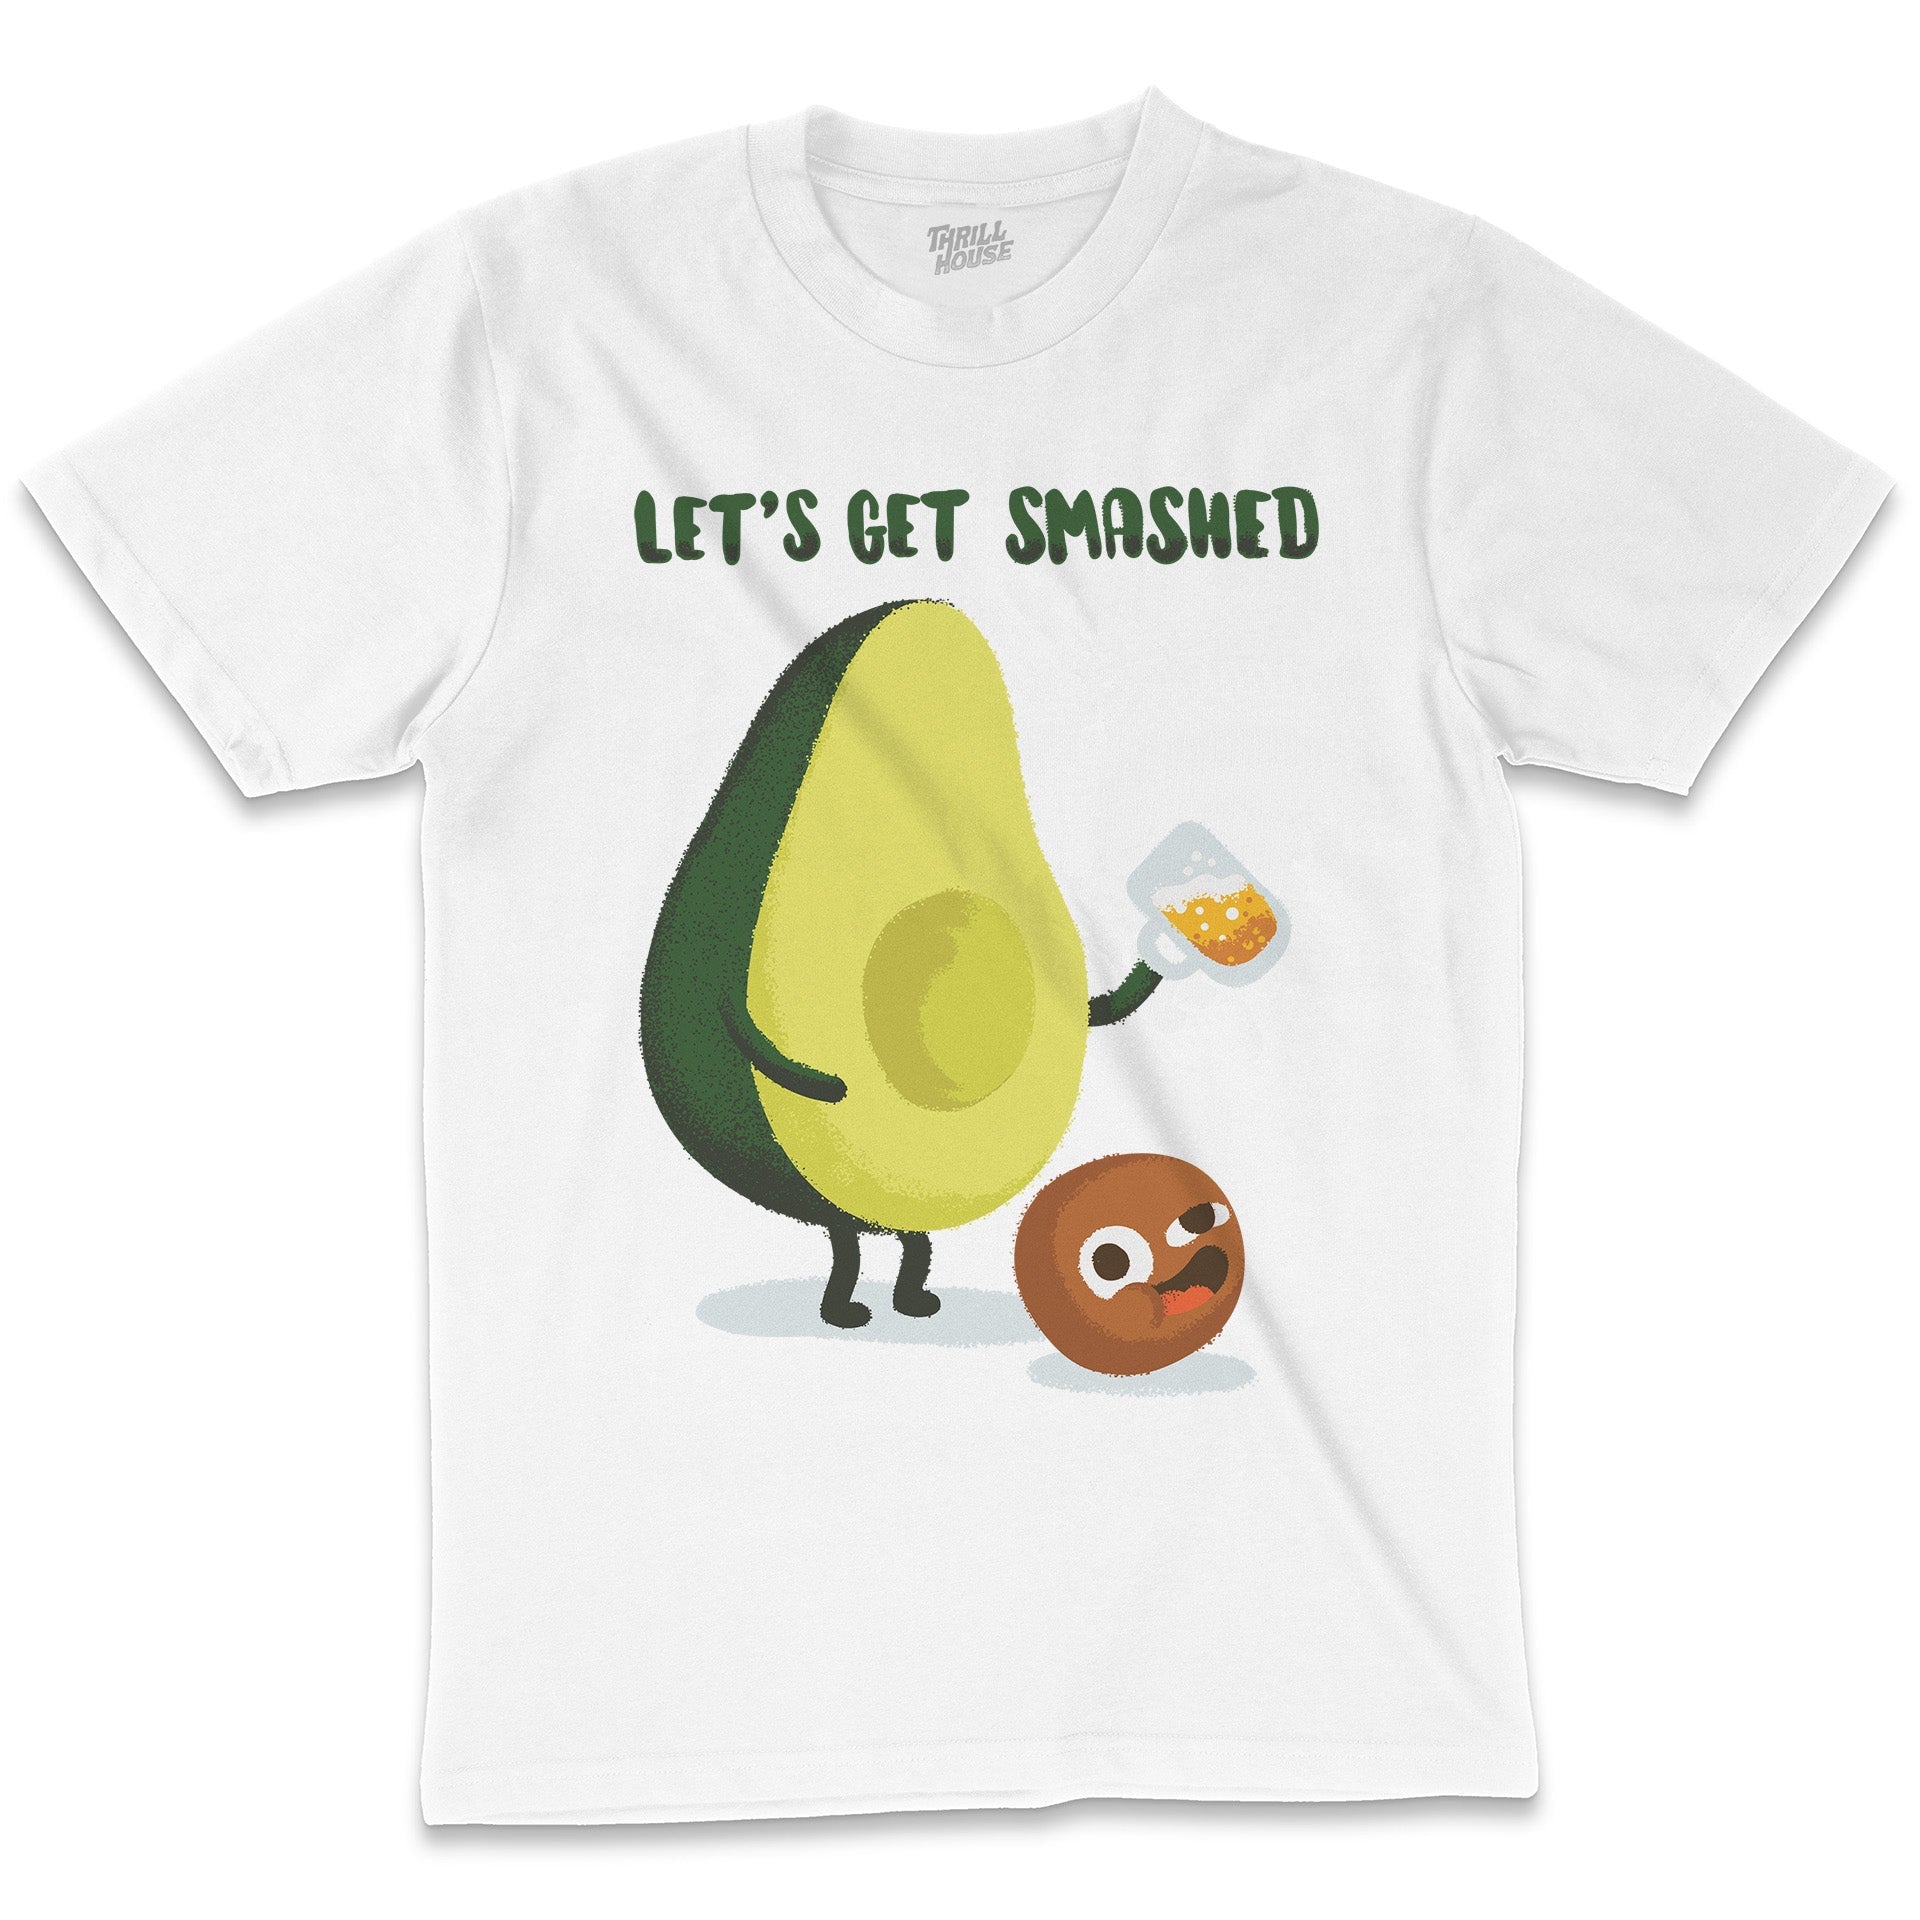 Avo Smash Avocado Funny Joke Foodie Booze Beer Drunk Fruit Cool Novelty Pun Parody Cotton T-Shirt